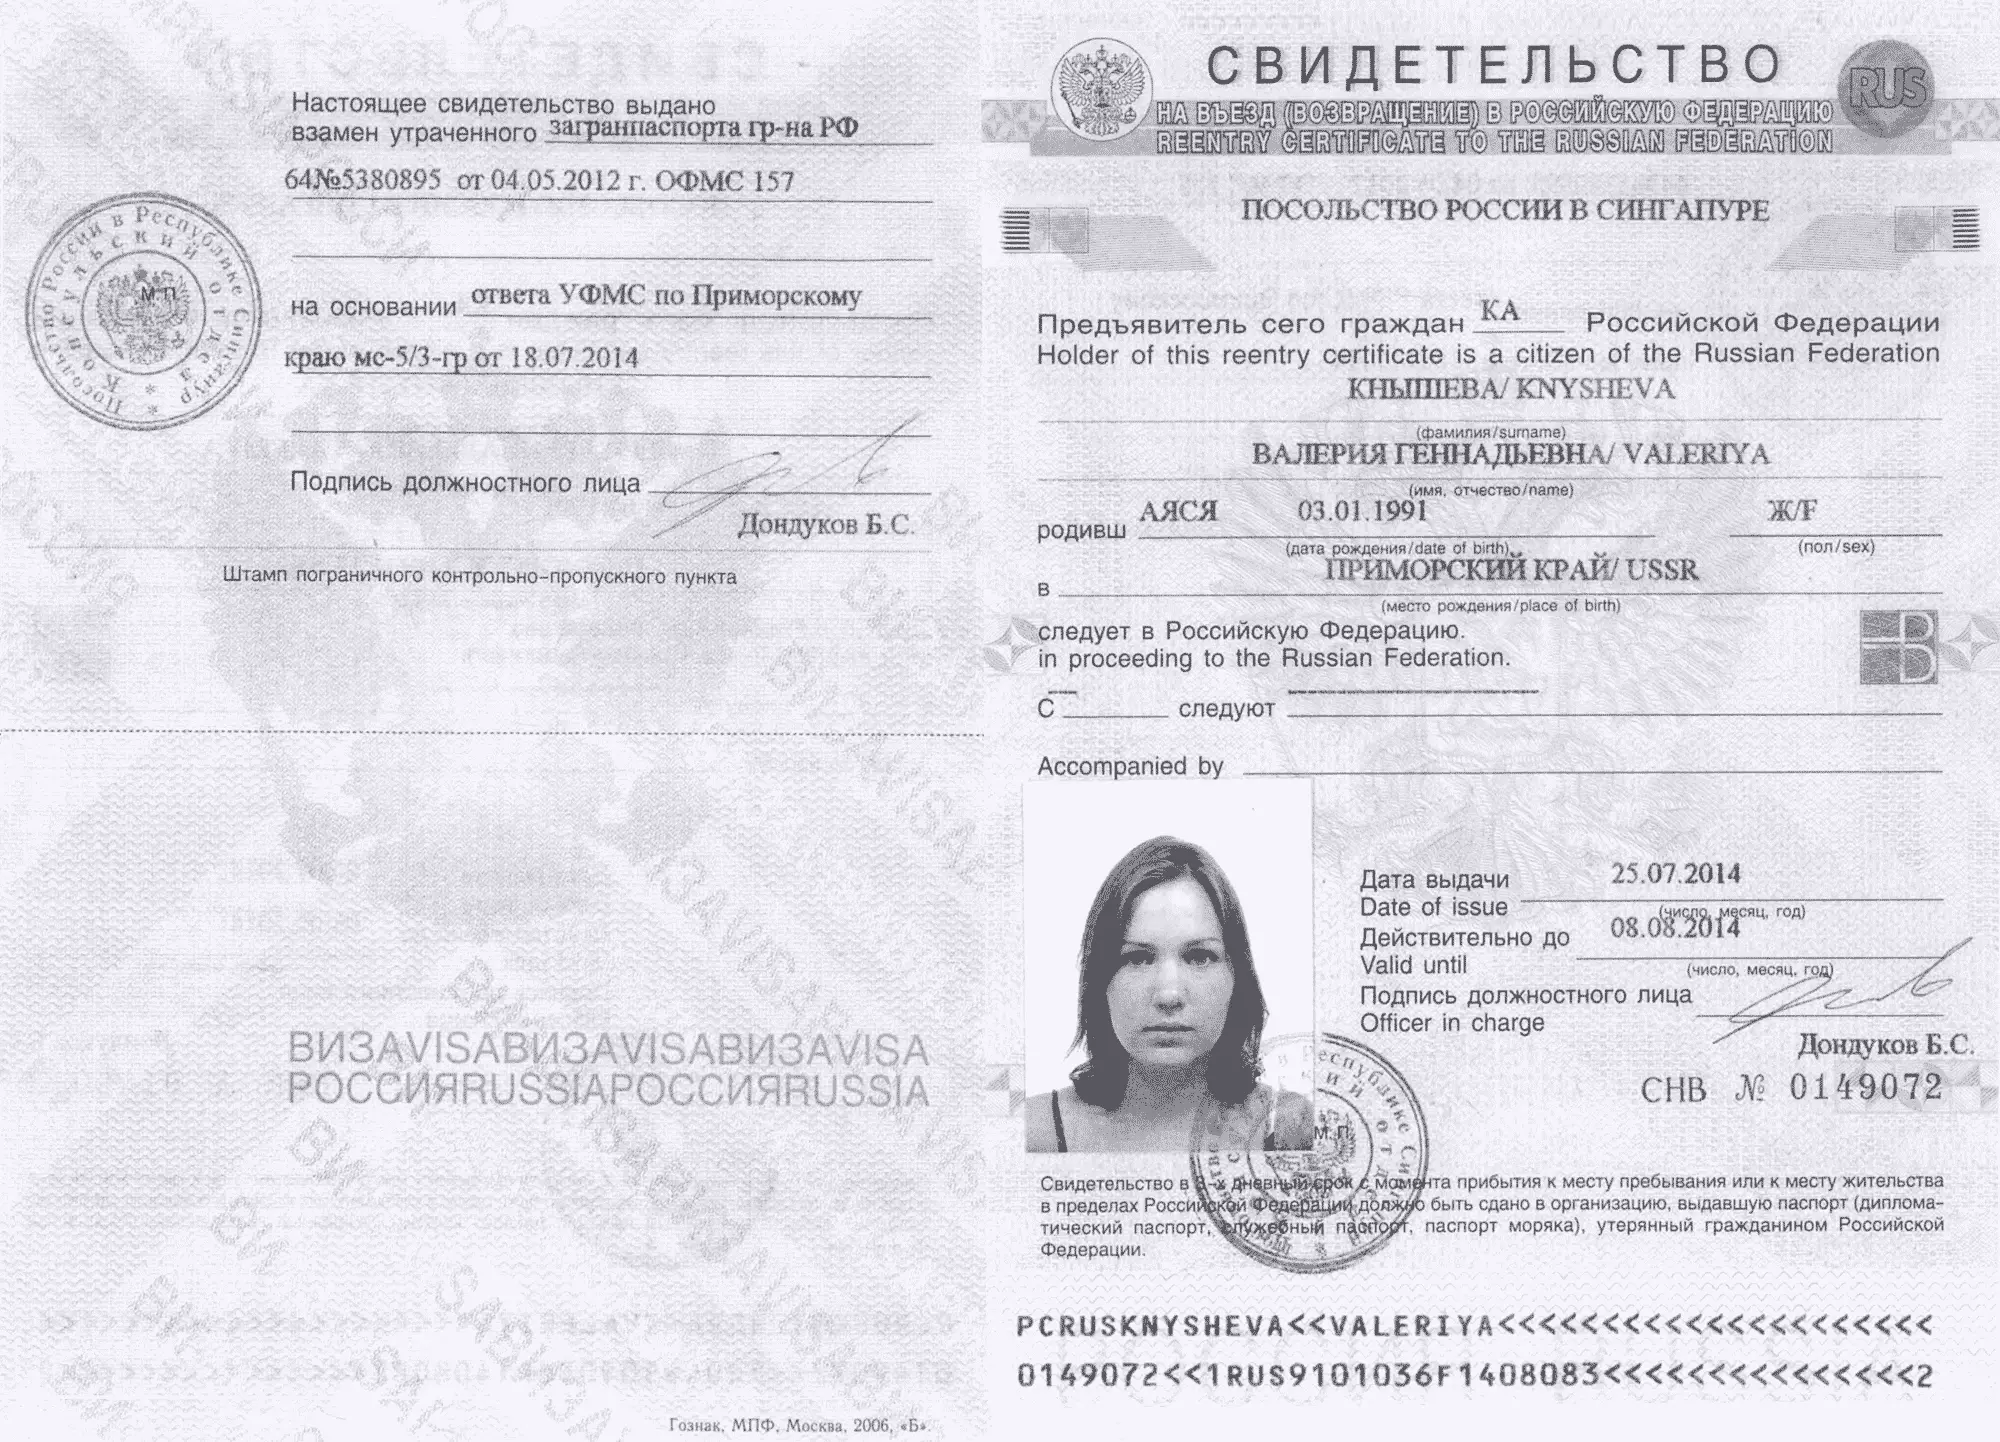 Брать ли российский паспорт в заграничную поездку?